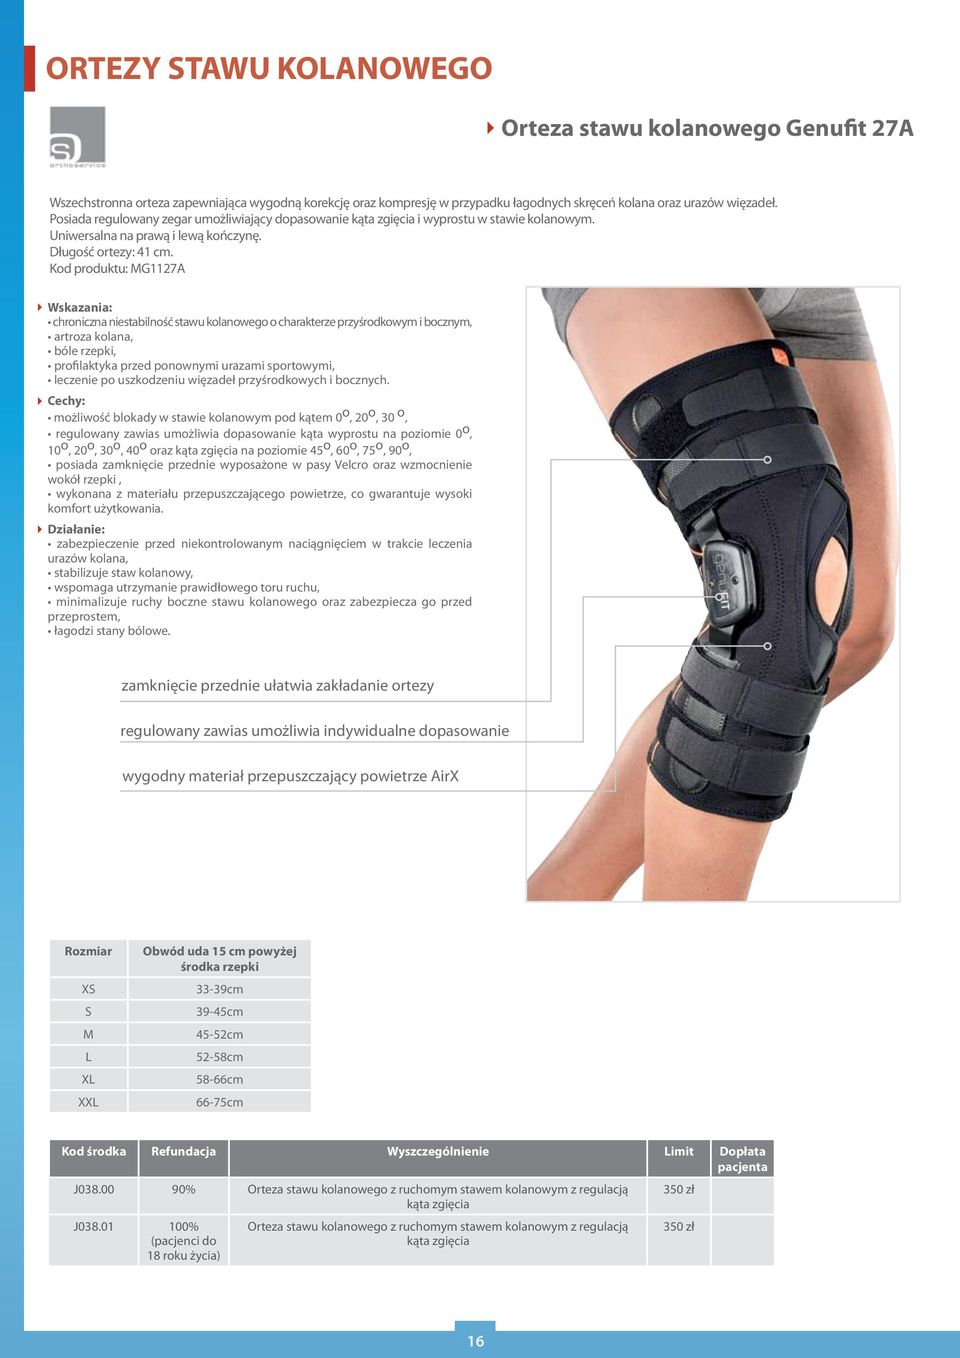 Kod produktu: MG1127A chroniczna niestabilność stawu kolanowego o charakterze przyśrodkowym i bocznym, artroza kolana, bóle rzepki, profilaktyka przed ponownymi urazami sportowymi, leczenie po